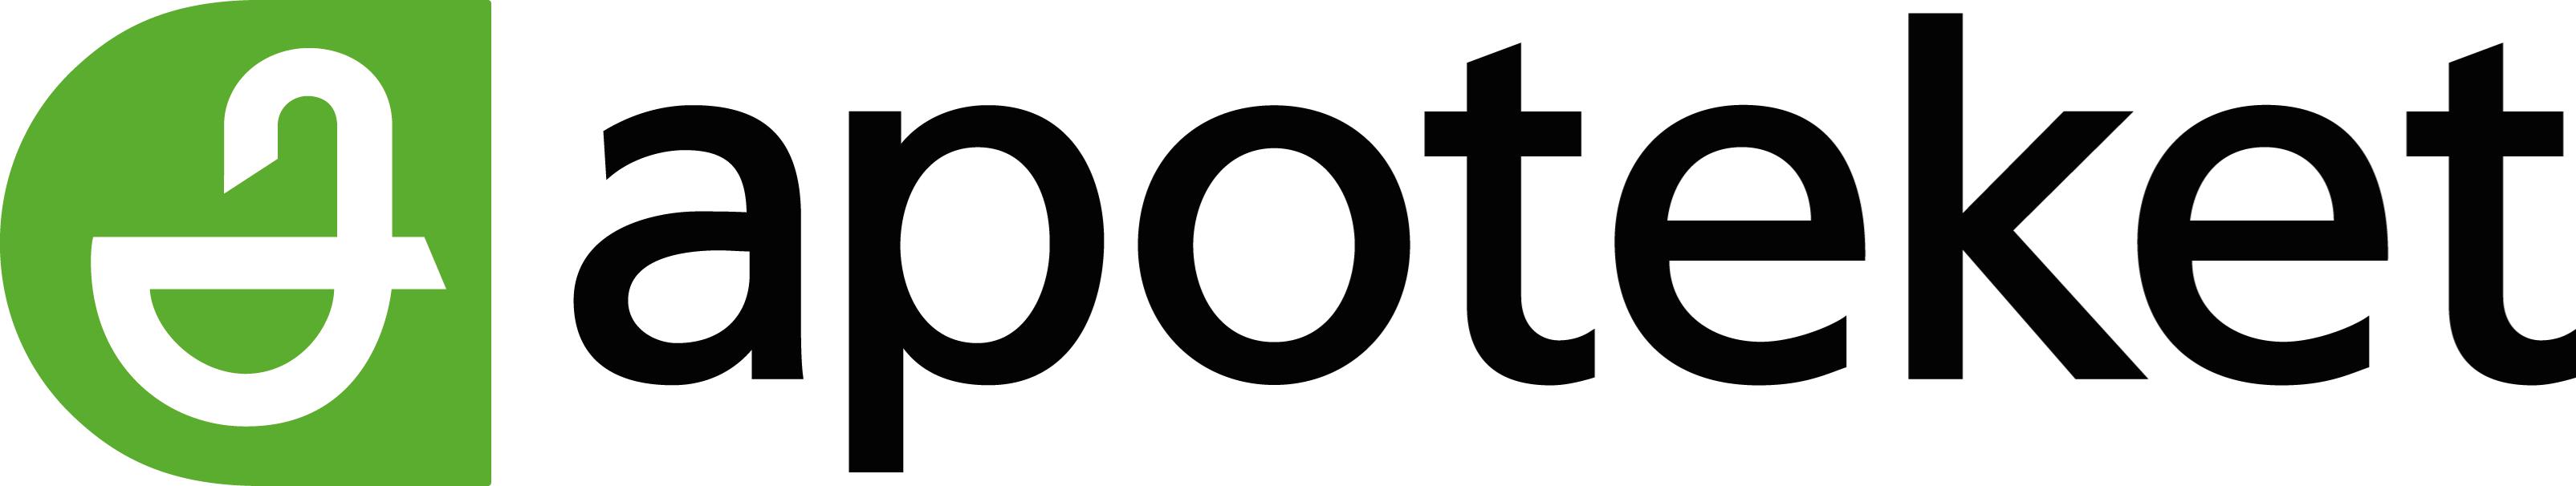 Logo of Apoteket